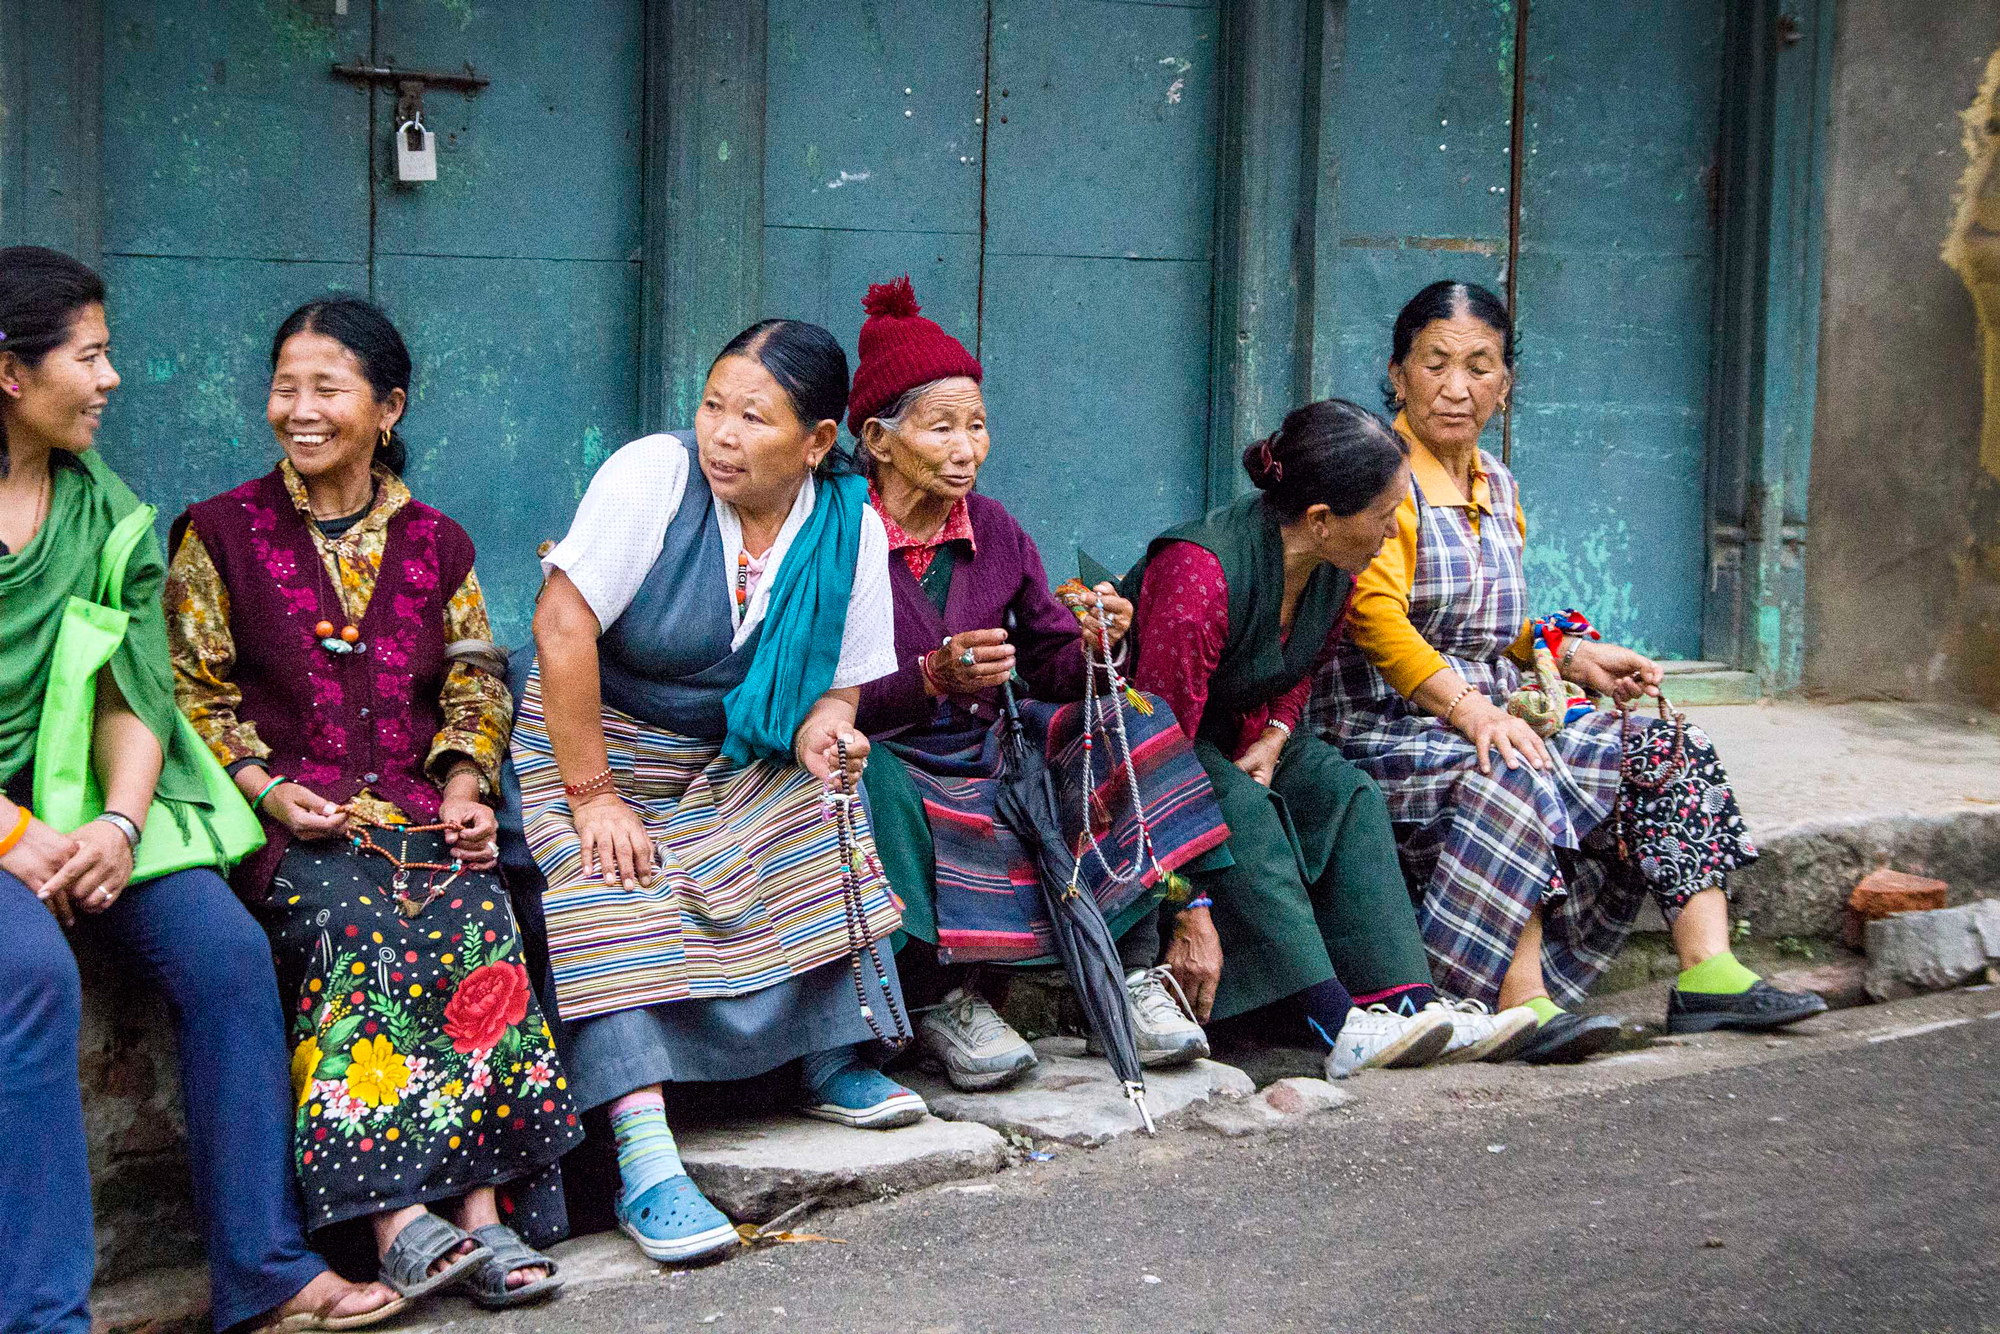 The ladies of Kathmandu.